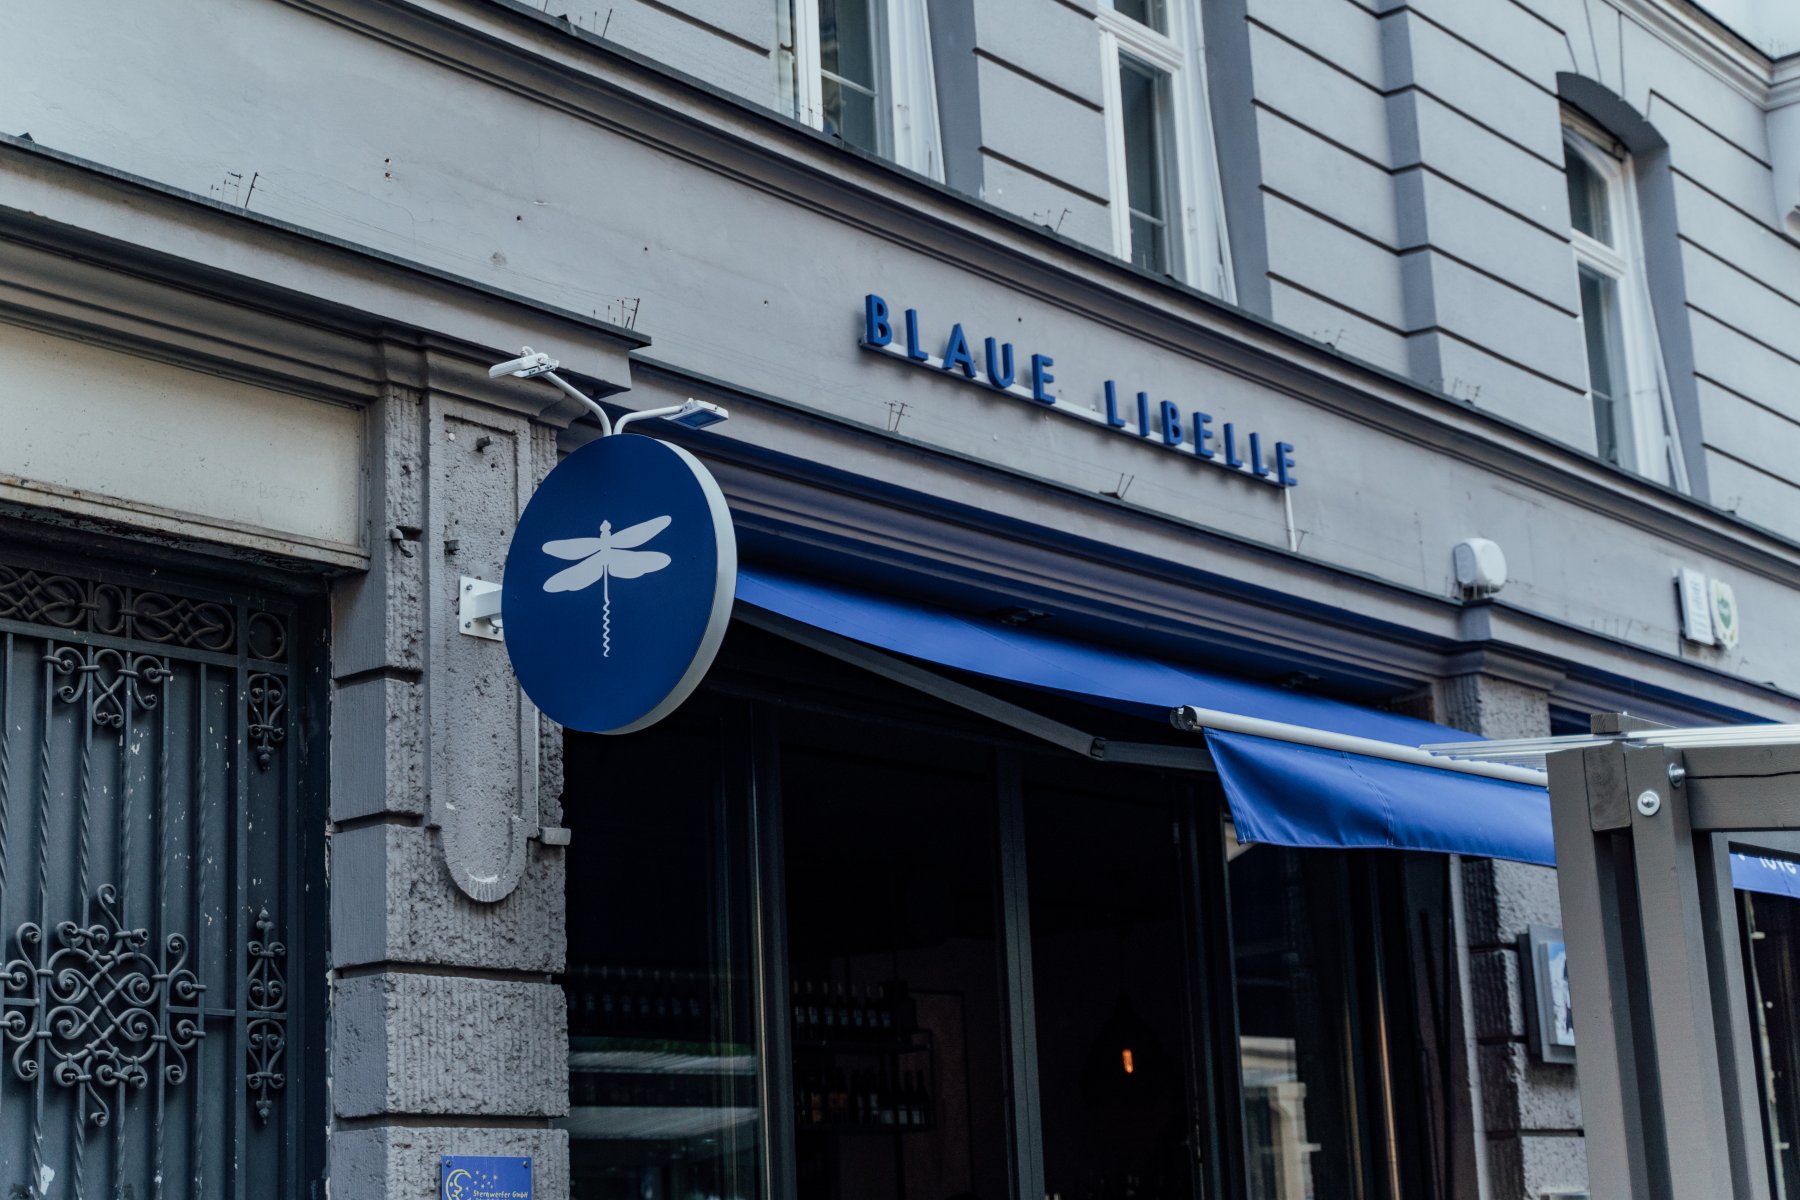 Geheimtippmuenchen Essenundtrinken Restaurant Blaue Libelle Fw 9 – ©wunderland media GmbH